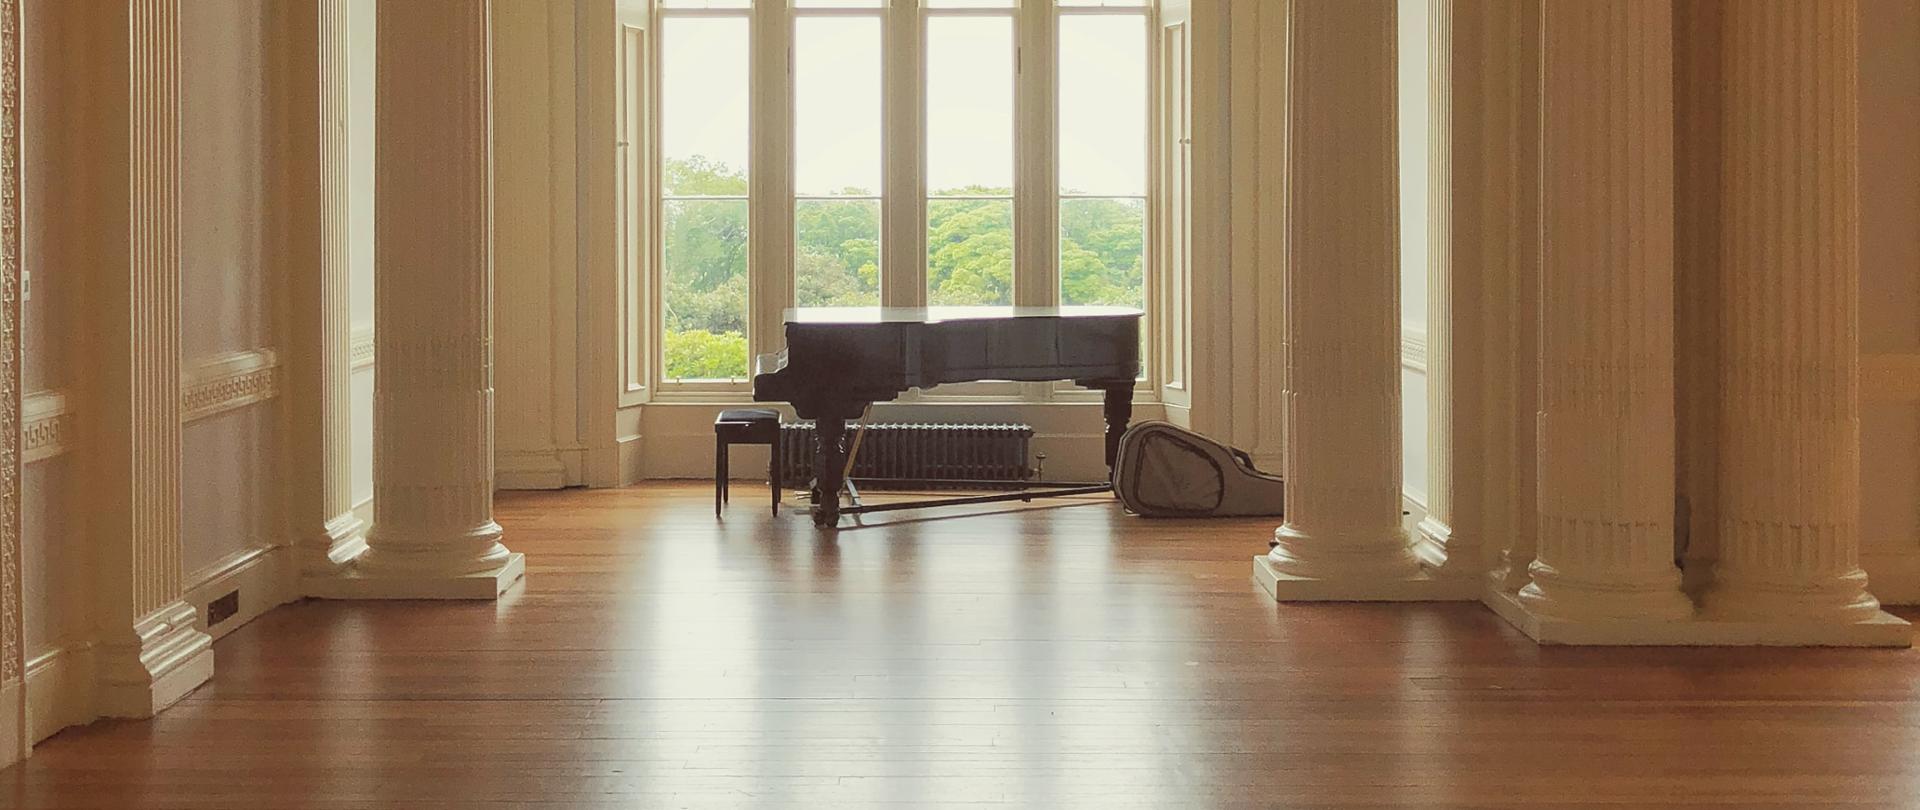 zdjęcie przedstawiające dużą salę z fortepianem ustawionym na tle okna